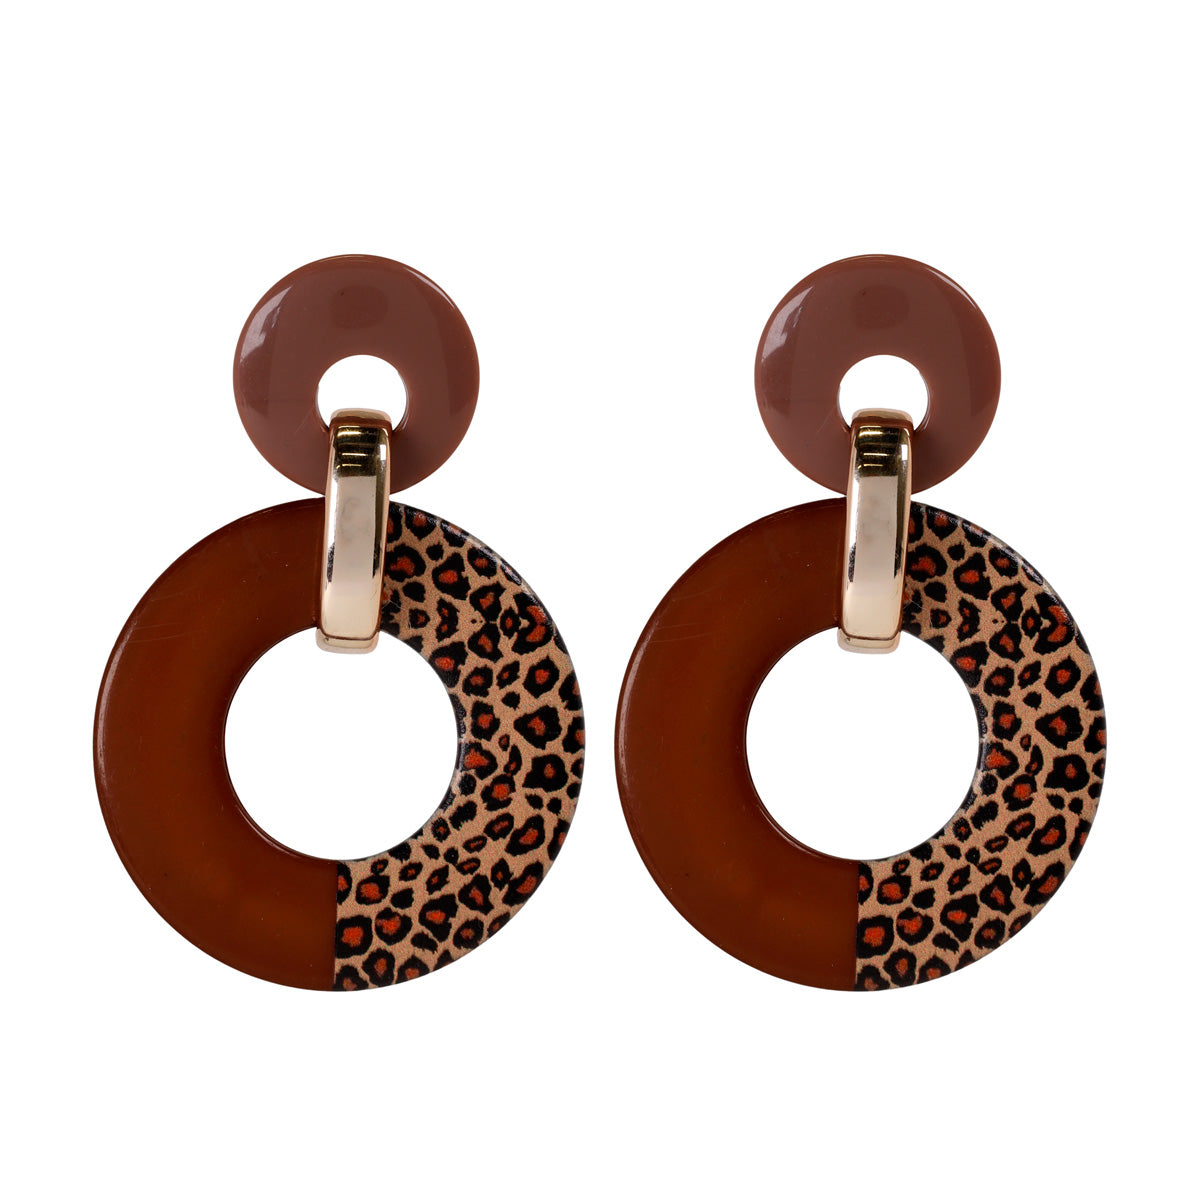 Plastic leopard earrings